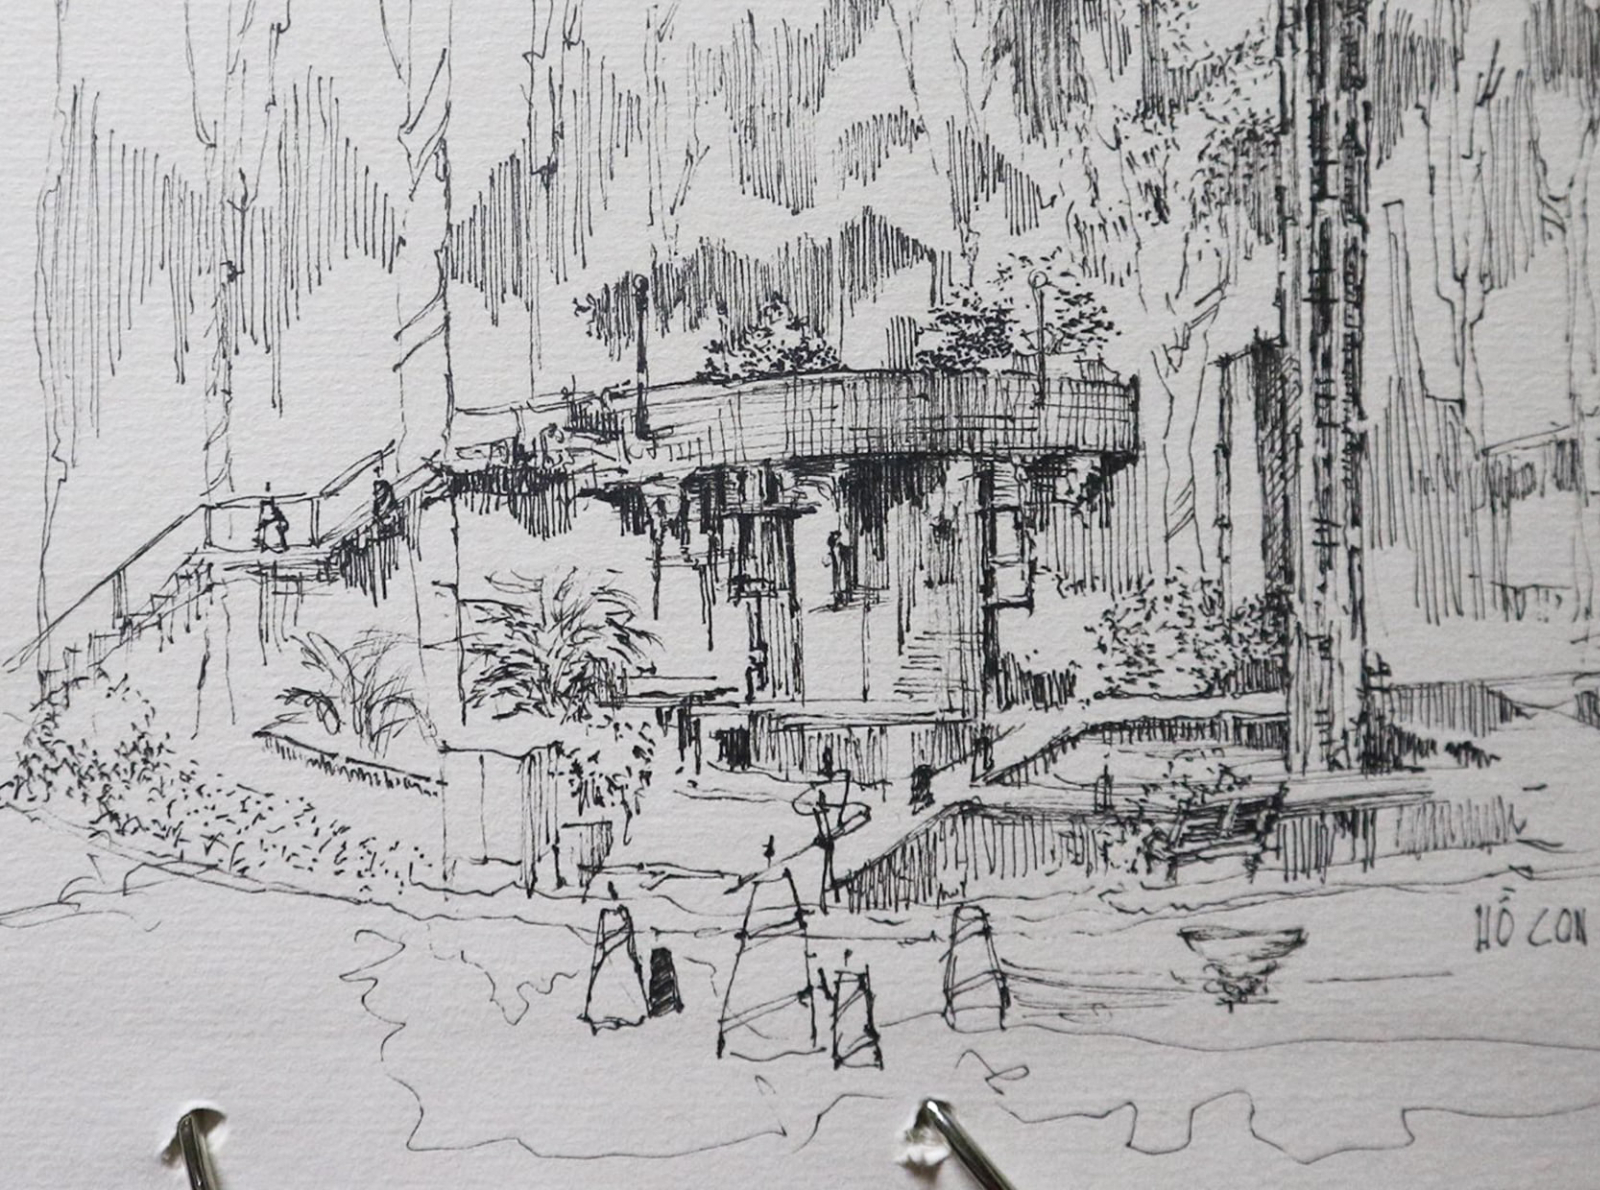 Vẽ ký họa Hồ Con Rùa Sài Gòn: “Thử tưởng tượng khoảnh khắc bình yên và cảm giác sự sống đang trỗi dậy tại Hồ Con Rùa Sài Gòn được tái hiện qua bàn tay tài hoa của các họa sĩ. Hãy cùng đắm chìm trong những nét vẽ tuyệt đẹp và khám phá cái nhìn mới lạ về thành phố Sài Gòn.”